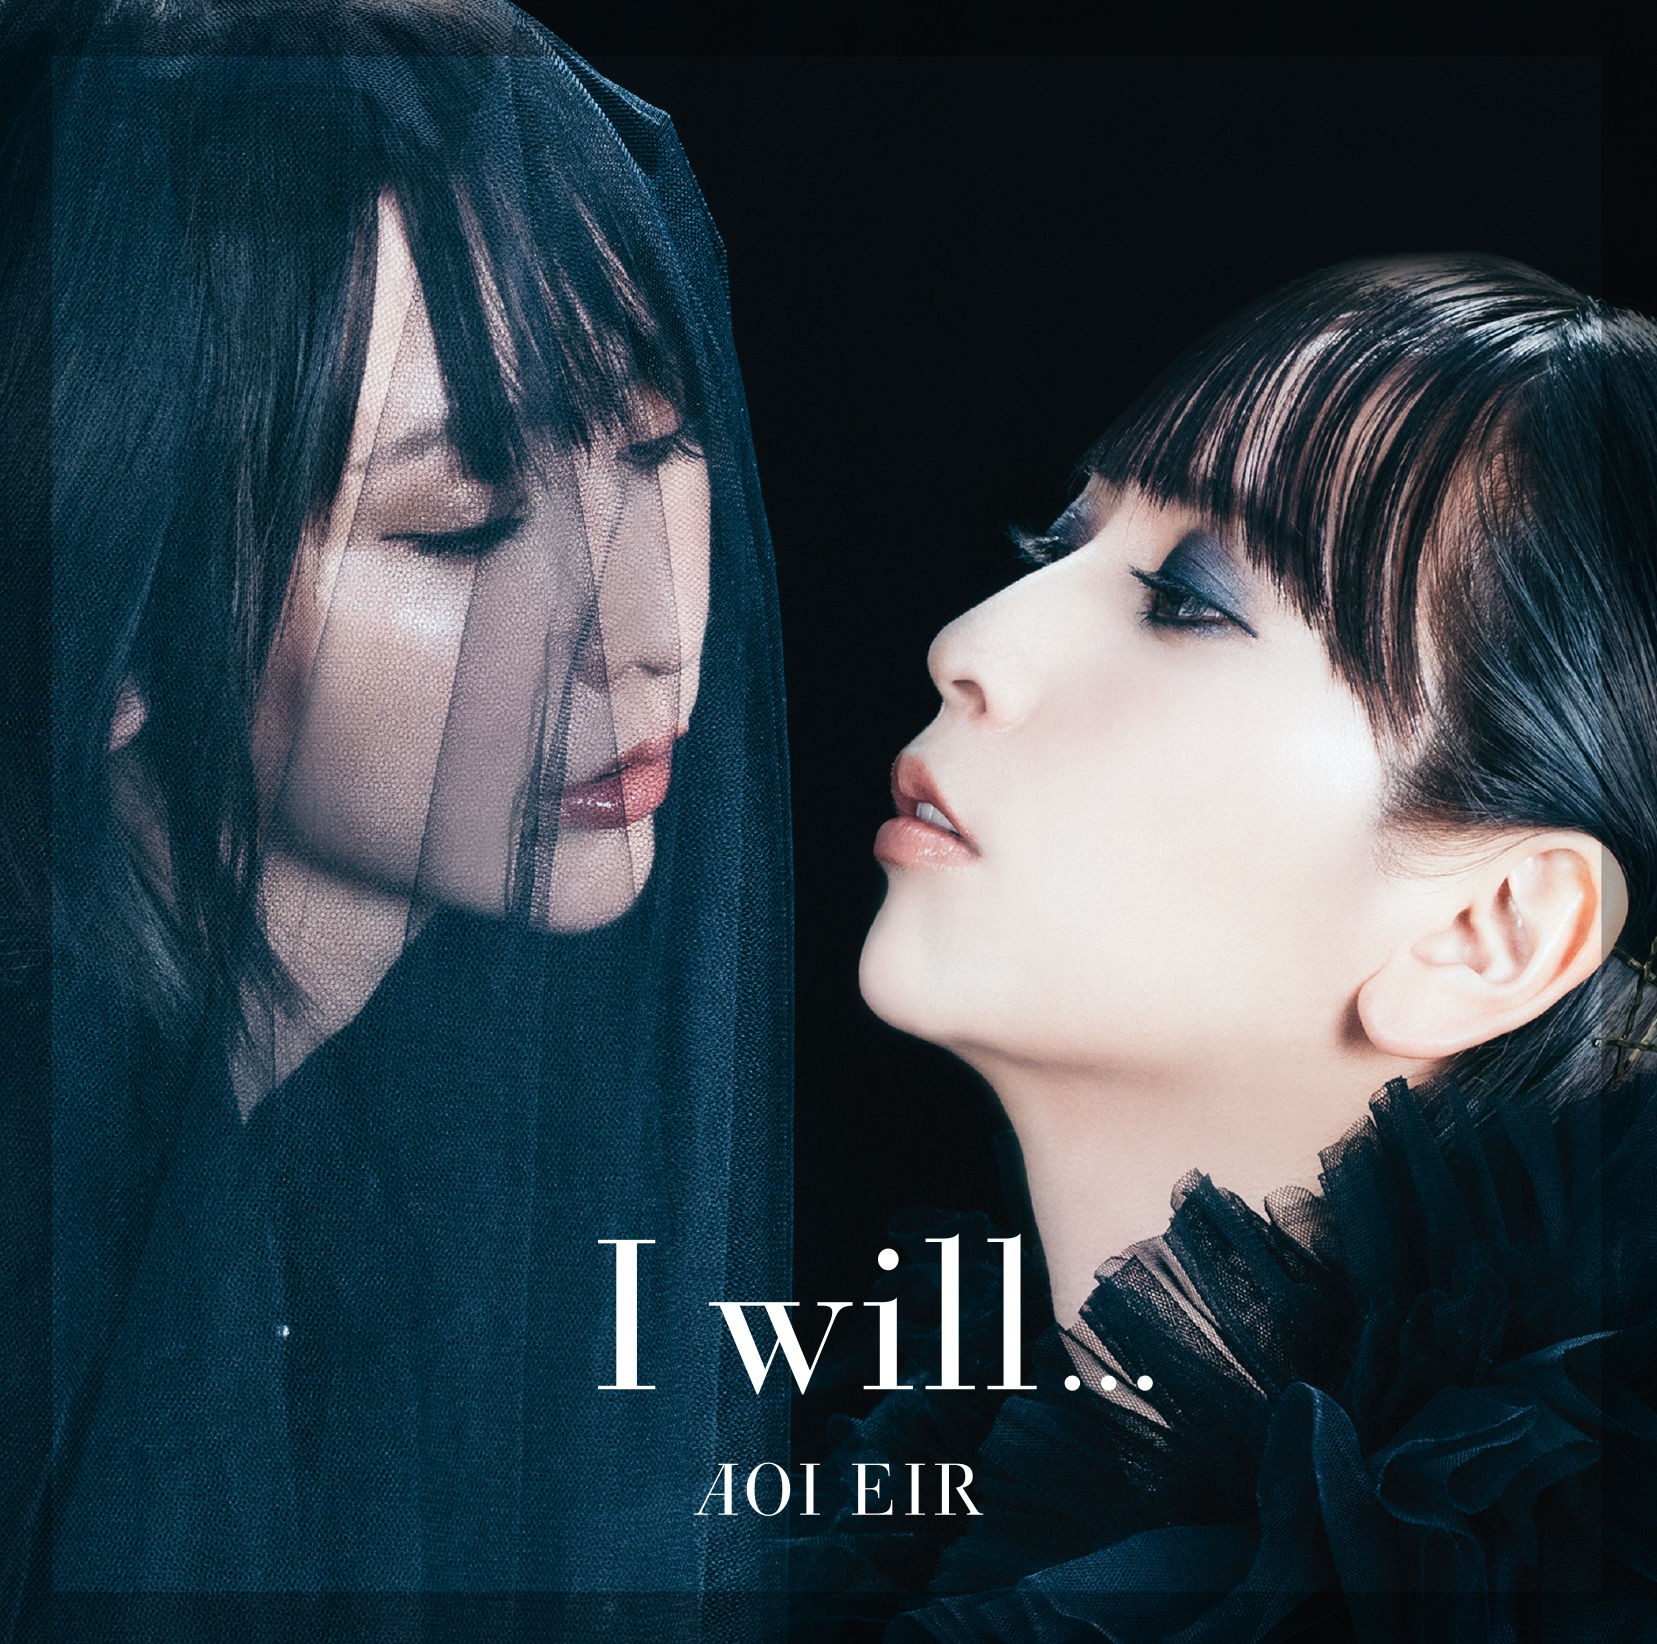 藍井エイル (Eir Aoi) - I will… [Mora FLAC 24bit/96kHz]